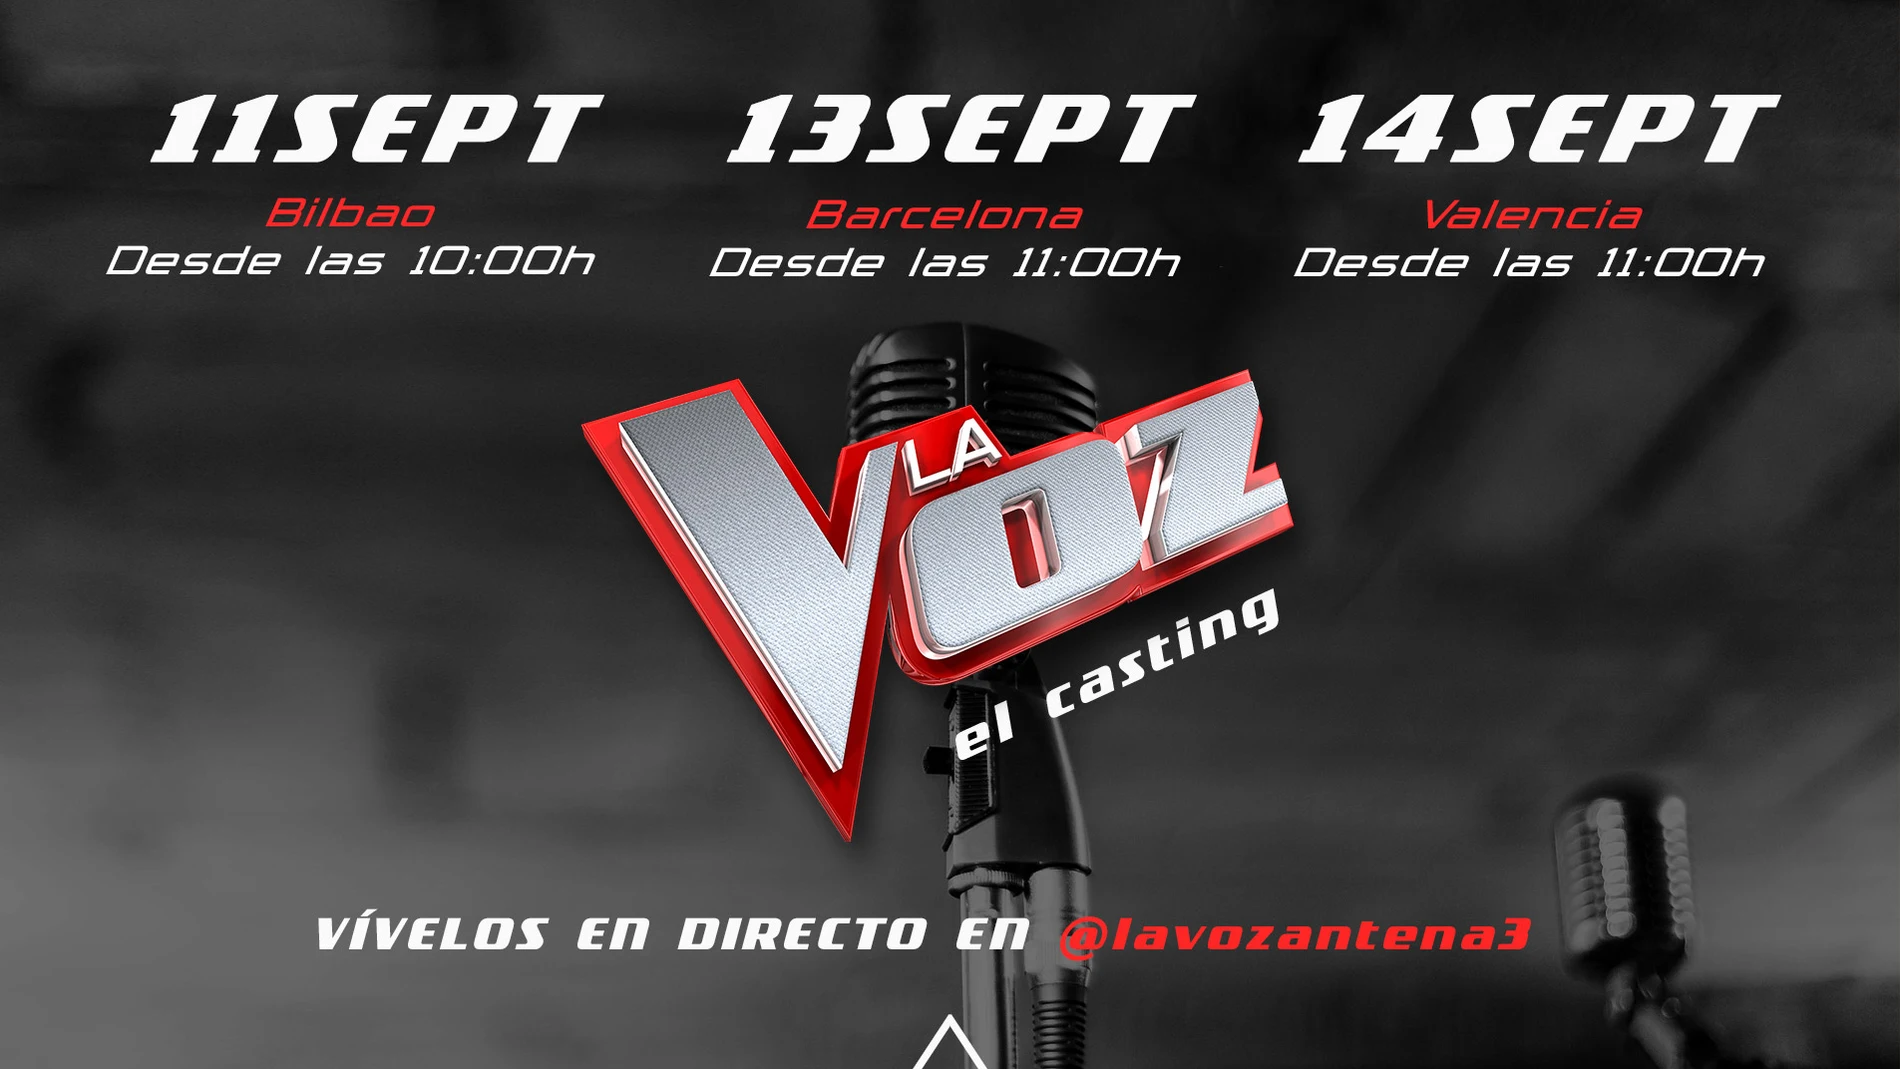 Sigue en directo los castings de 'La Voz' en Bilbao, Barcelona y Valencia a través de Instagram